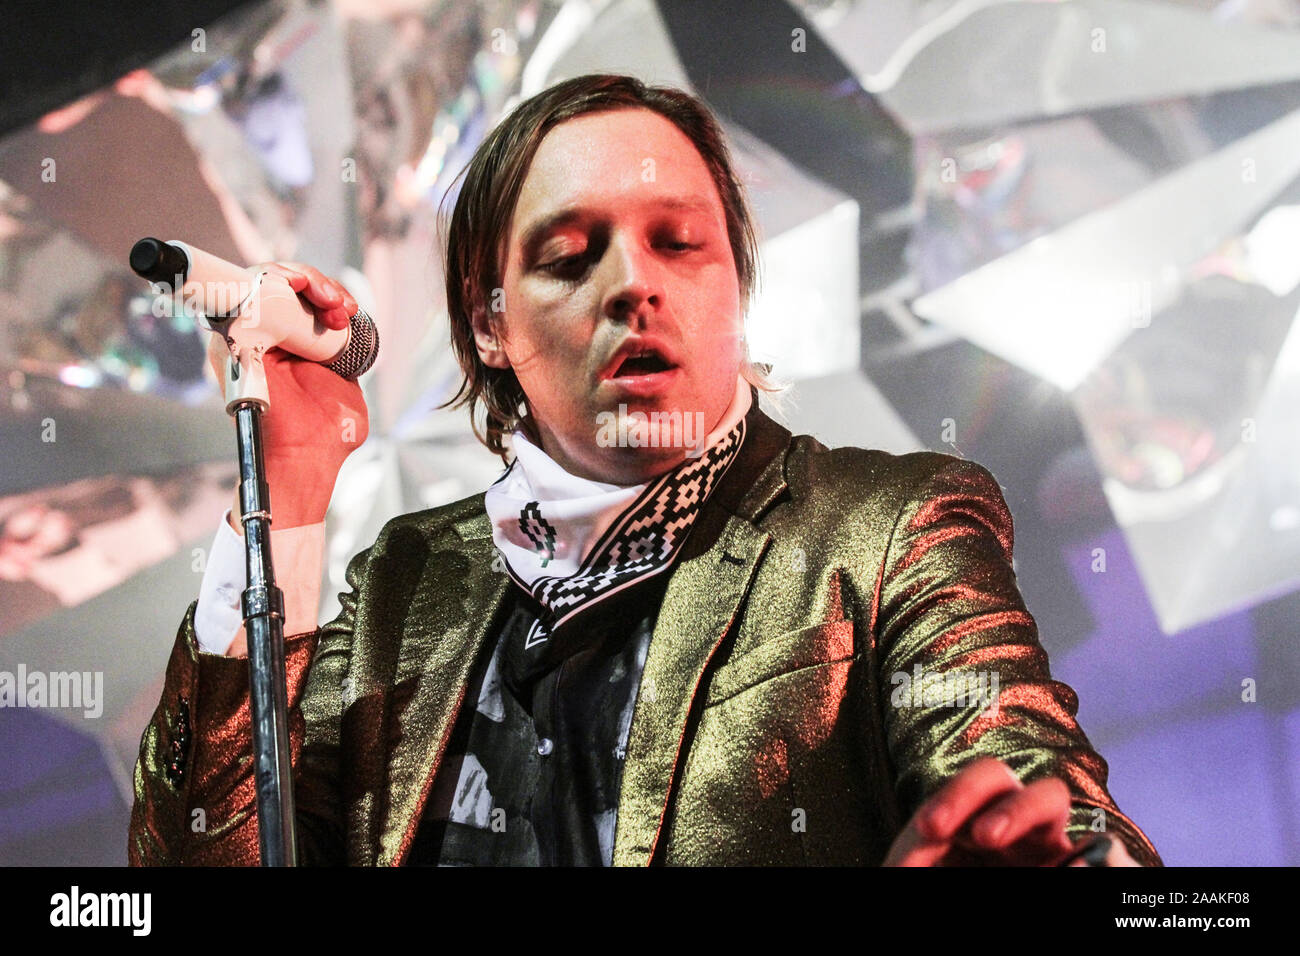 RIO DE JANEIRO, 04.04.2014 - A banda Arcade Fire se apresenta no Citibank Hall na noite desta sexta-feira. (Foto: Néstor J. Beremblum / Divulgação T4F Stock Photo